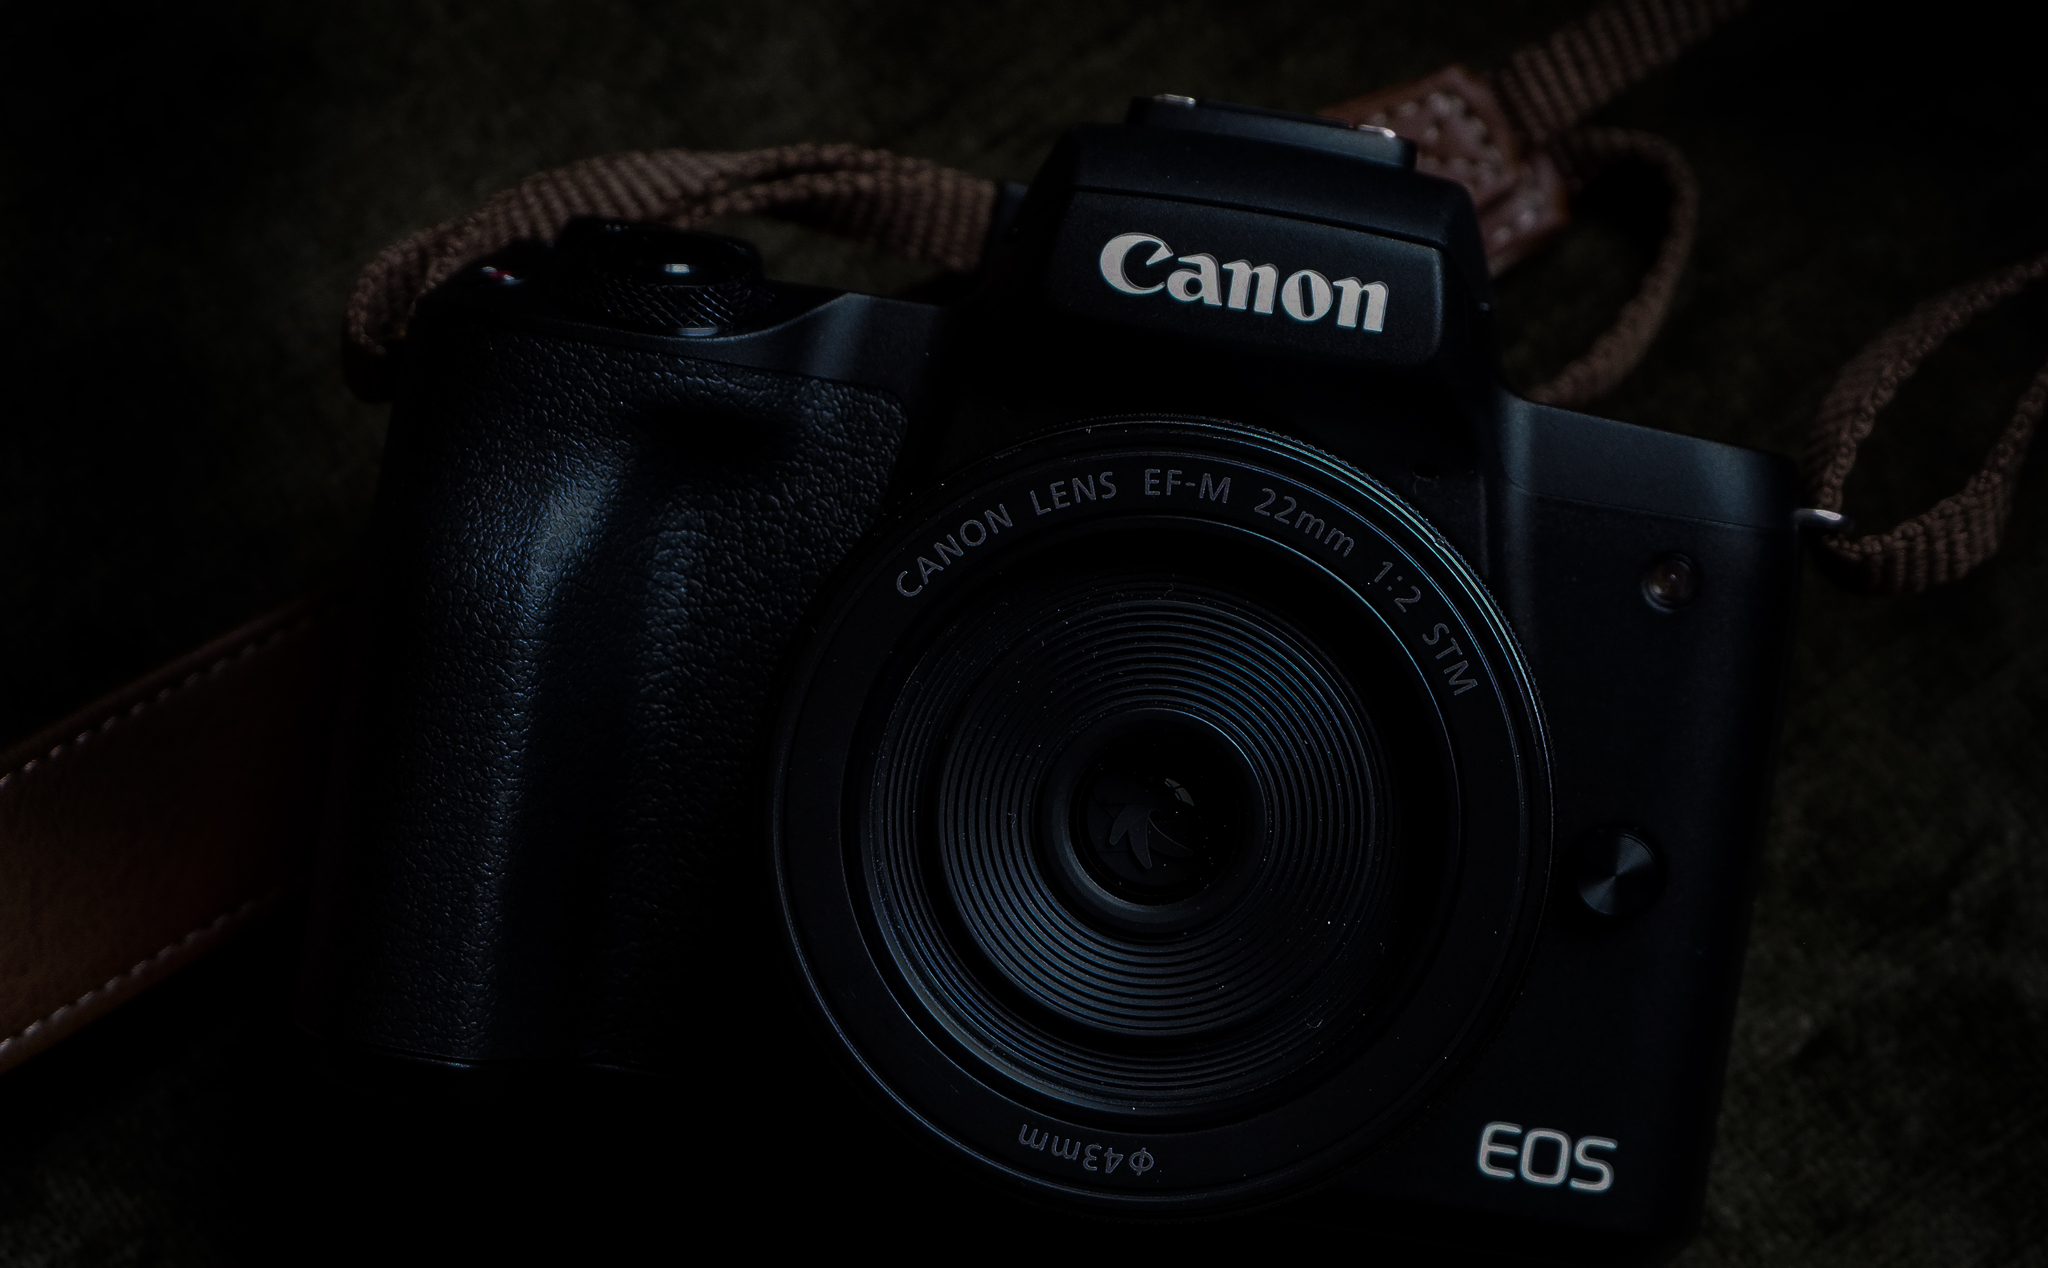 Danh sách toàn bộ sản phẩm Canon sẽ ra mắt trong ngày 5/9